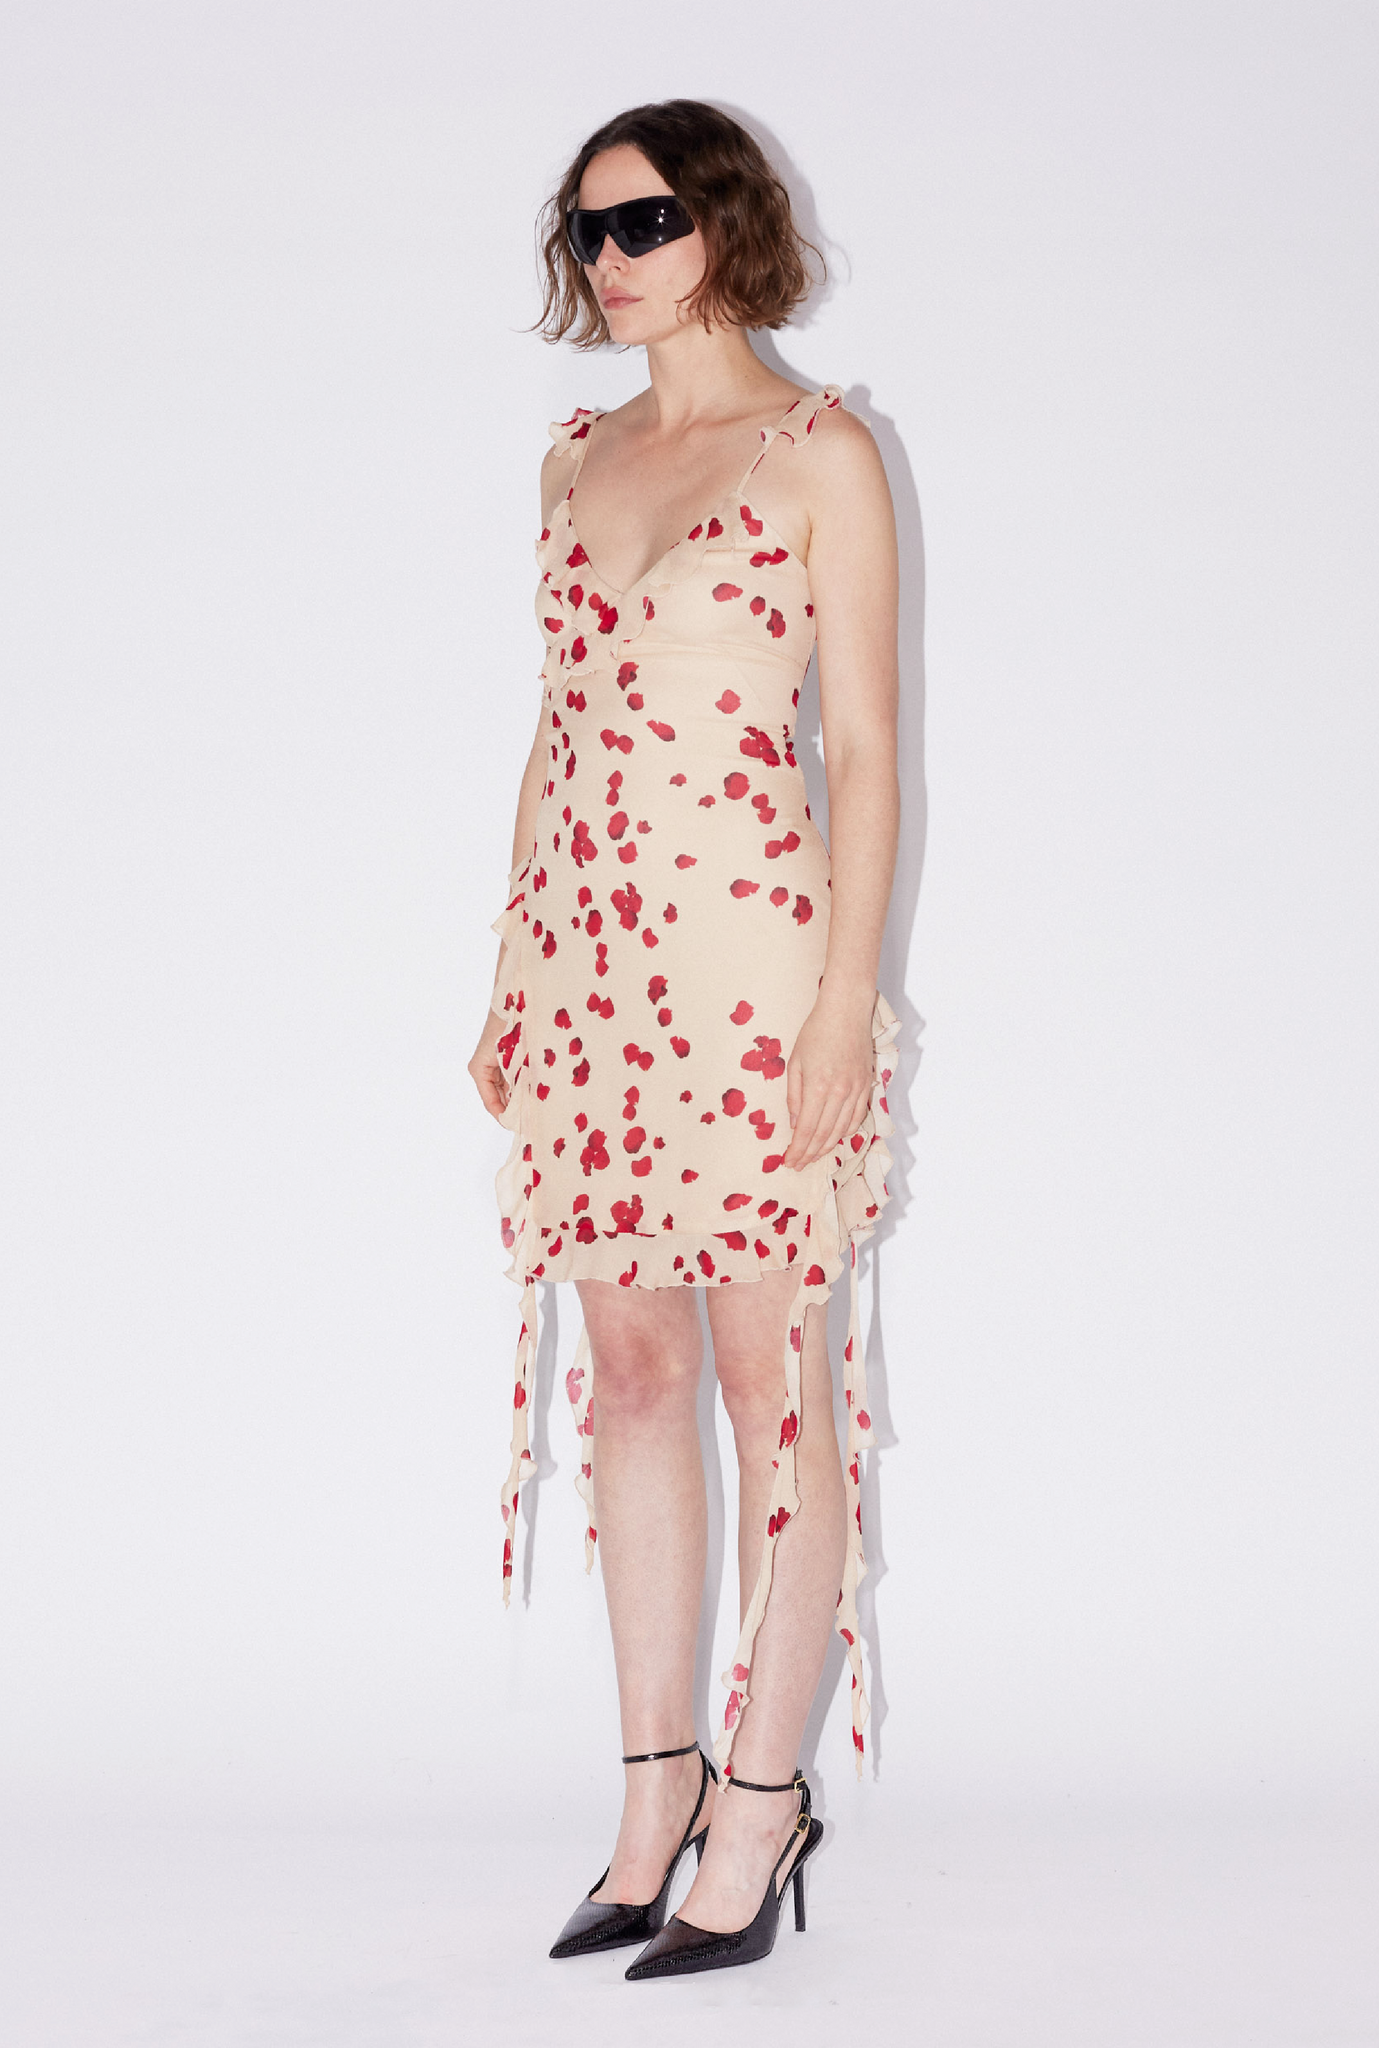 Nude rose chiffon dress